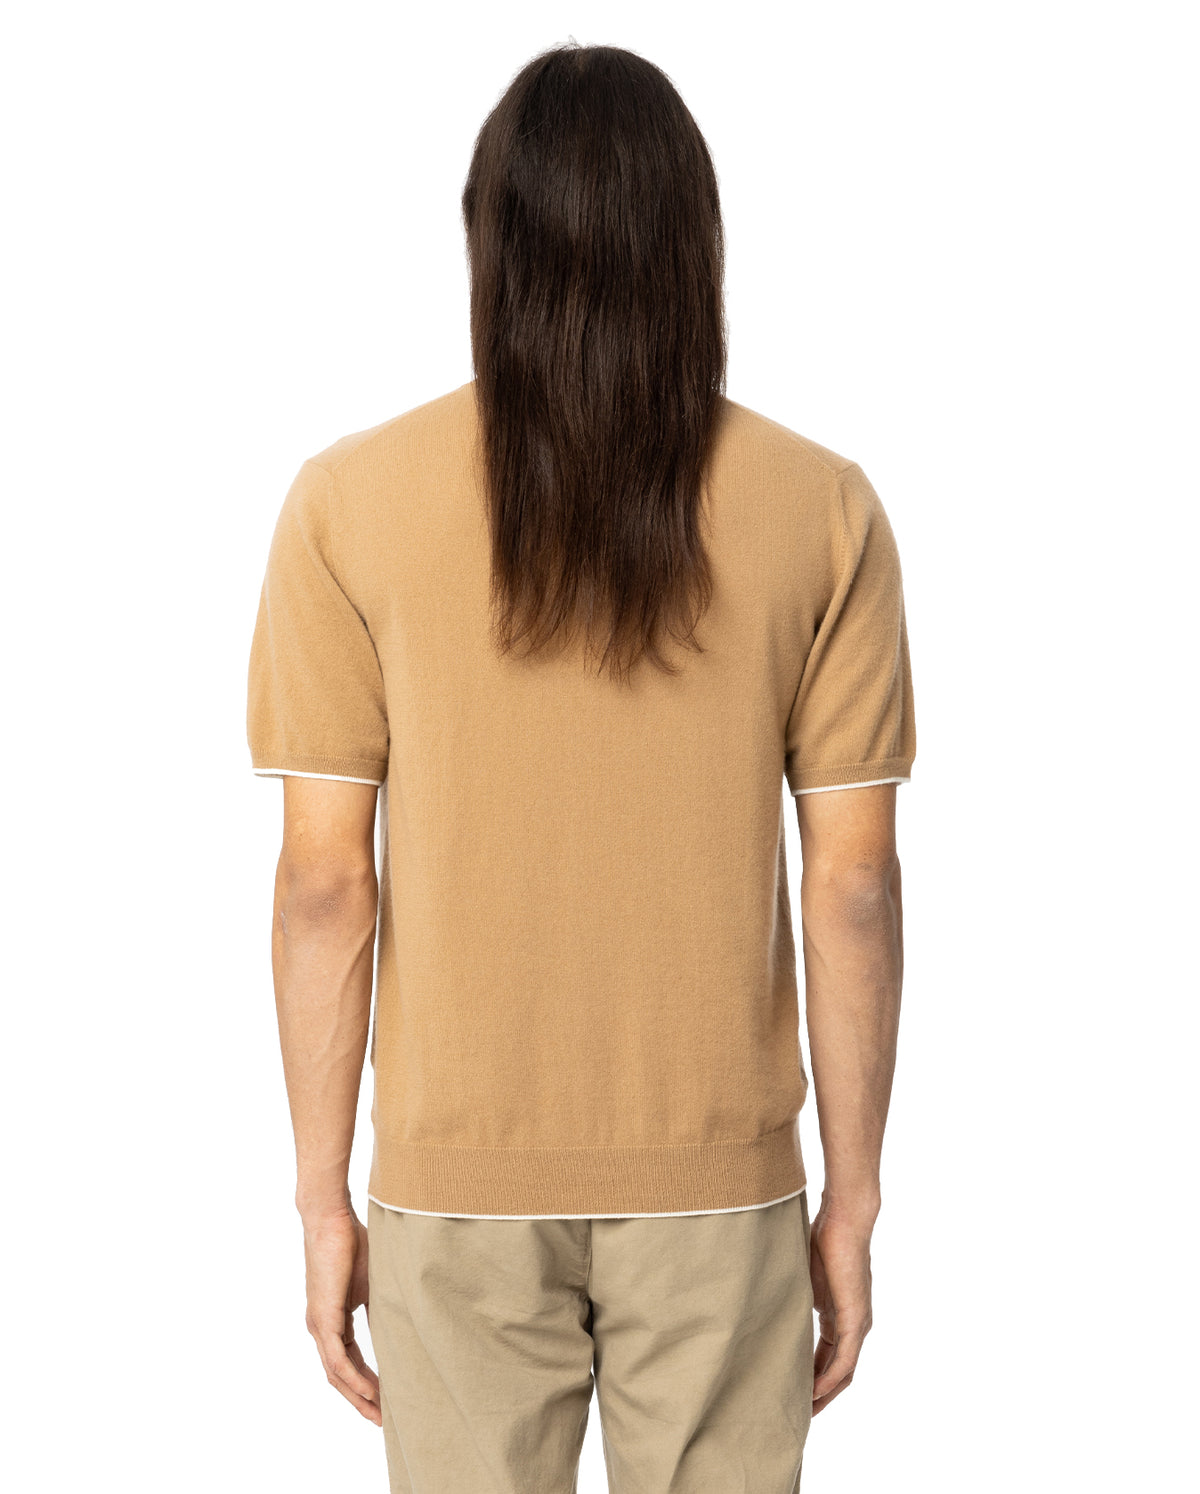 Mr Chichester Cashmere T-Shirt - Walnut